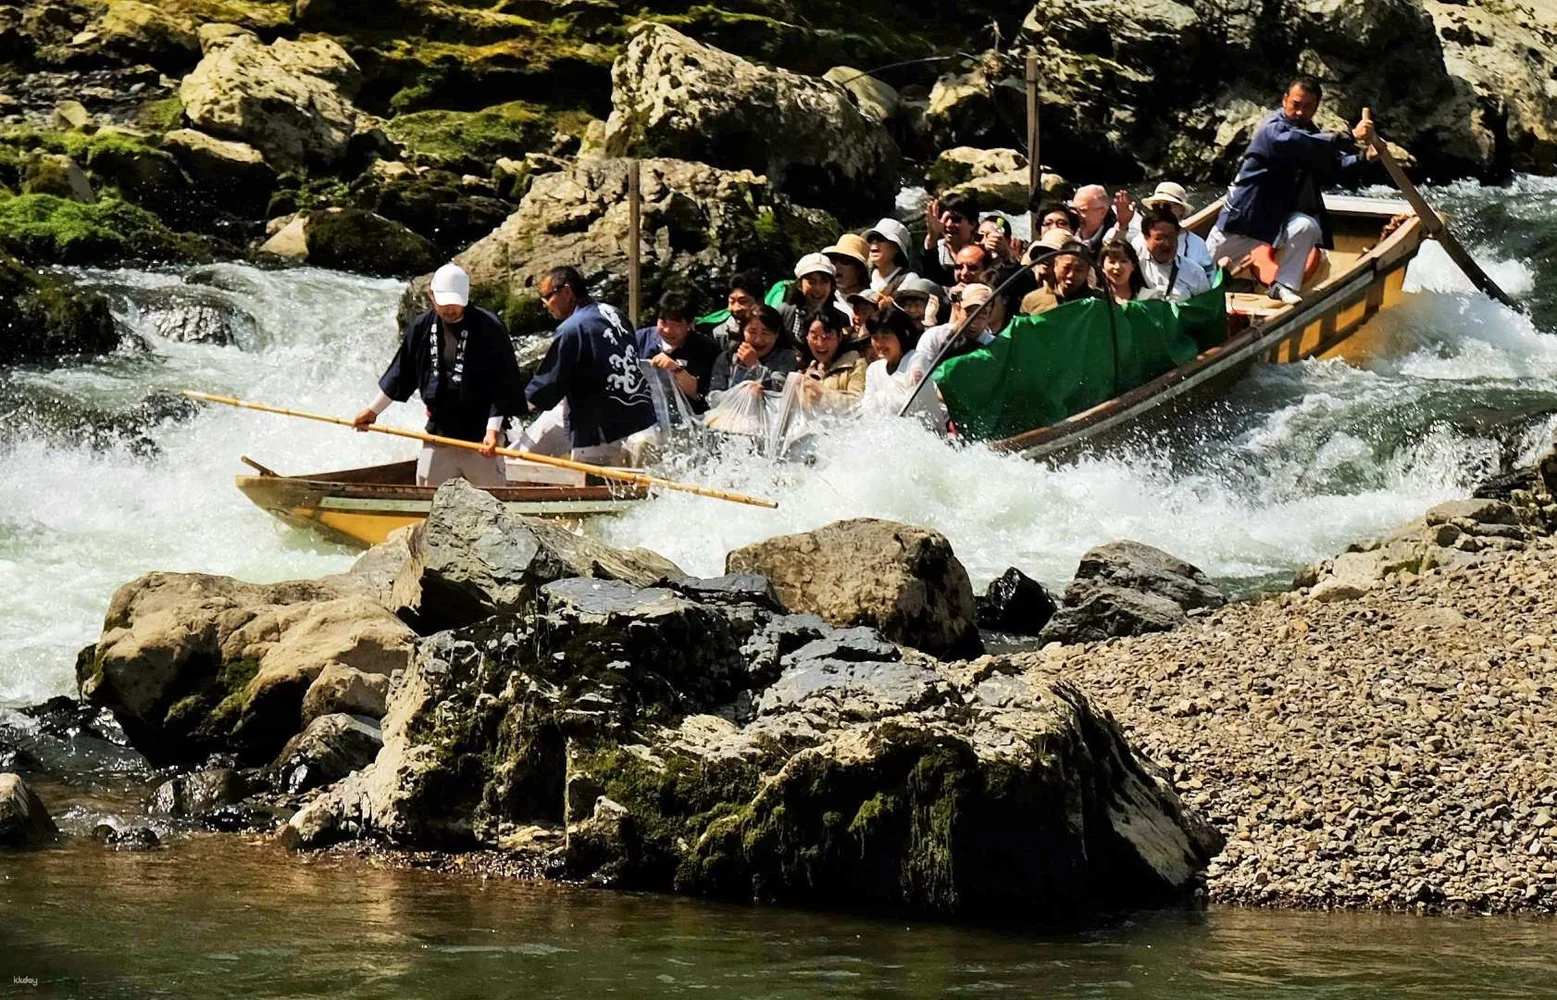 Arashiyama Boat Ride E-Ticket for Kyoto's Hozu River Valley